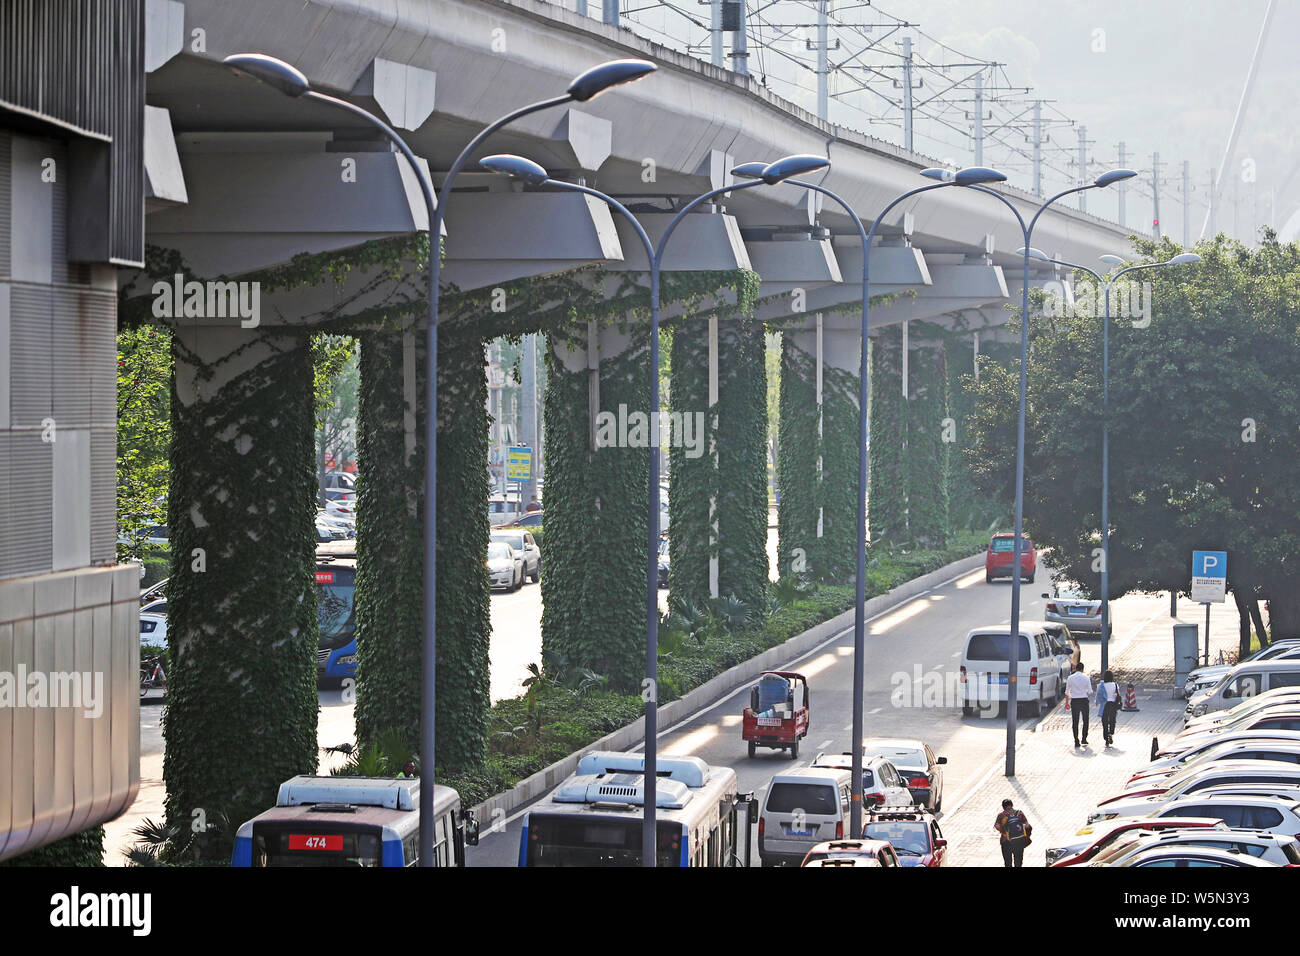 Una fila de pilares de una línea de metro elevado está cubierto con reductor  de plantas en barrio Shapingba, Chongqing, China, 9 de abril de 2019.  Plantas reductor gre Fotografía de stock - Alamy